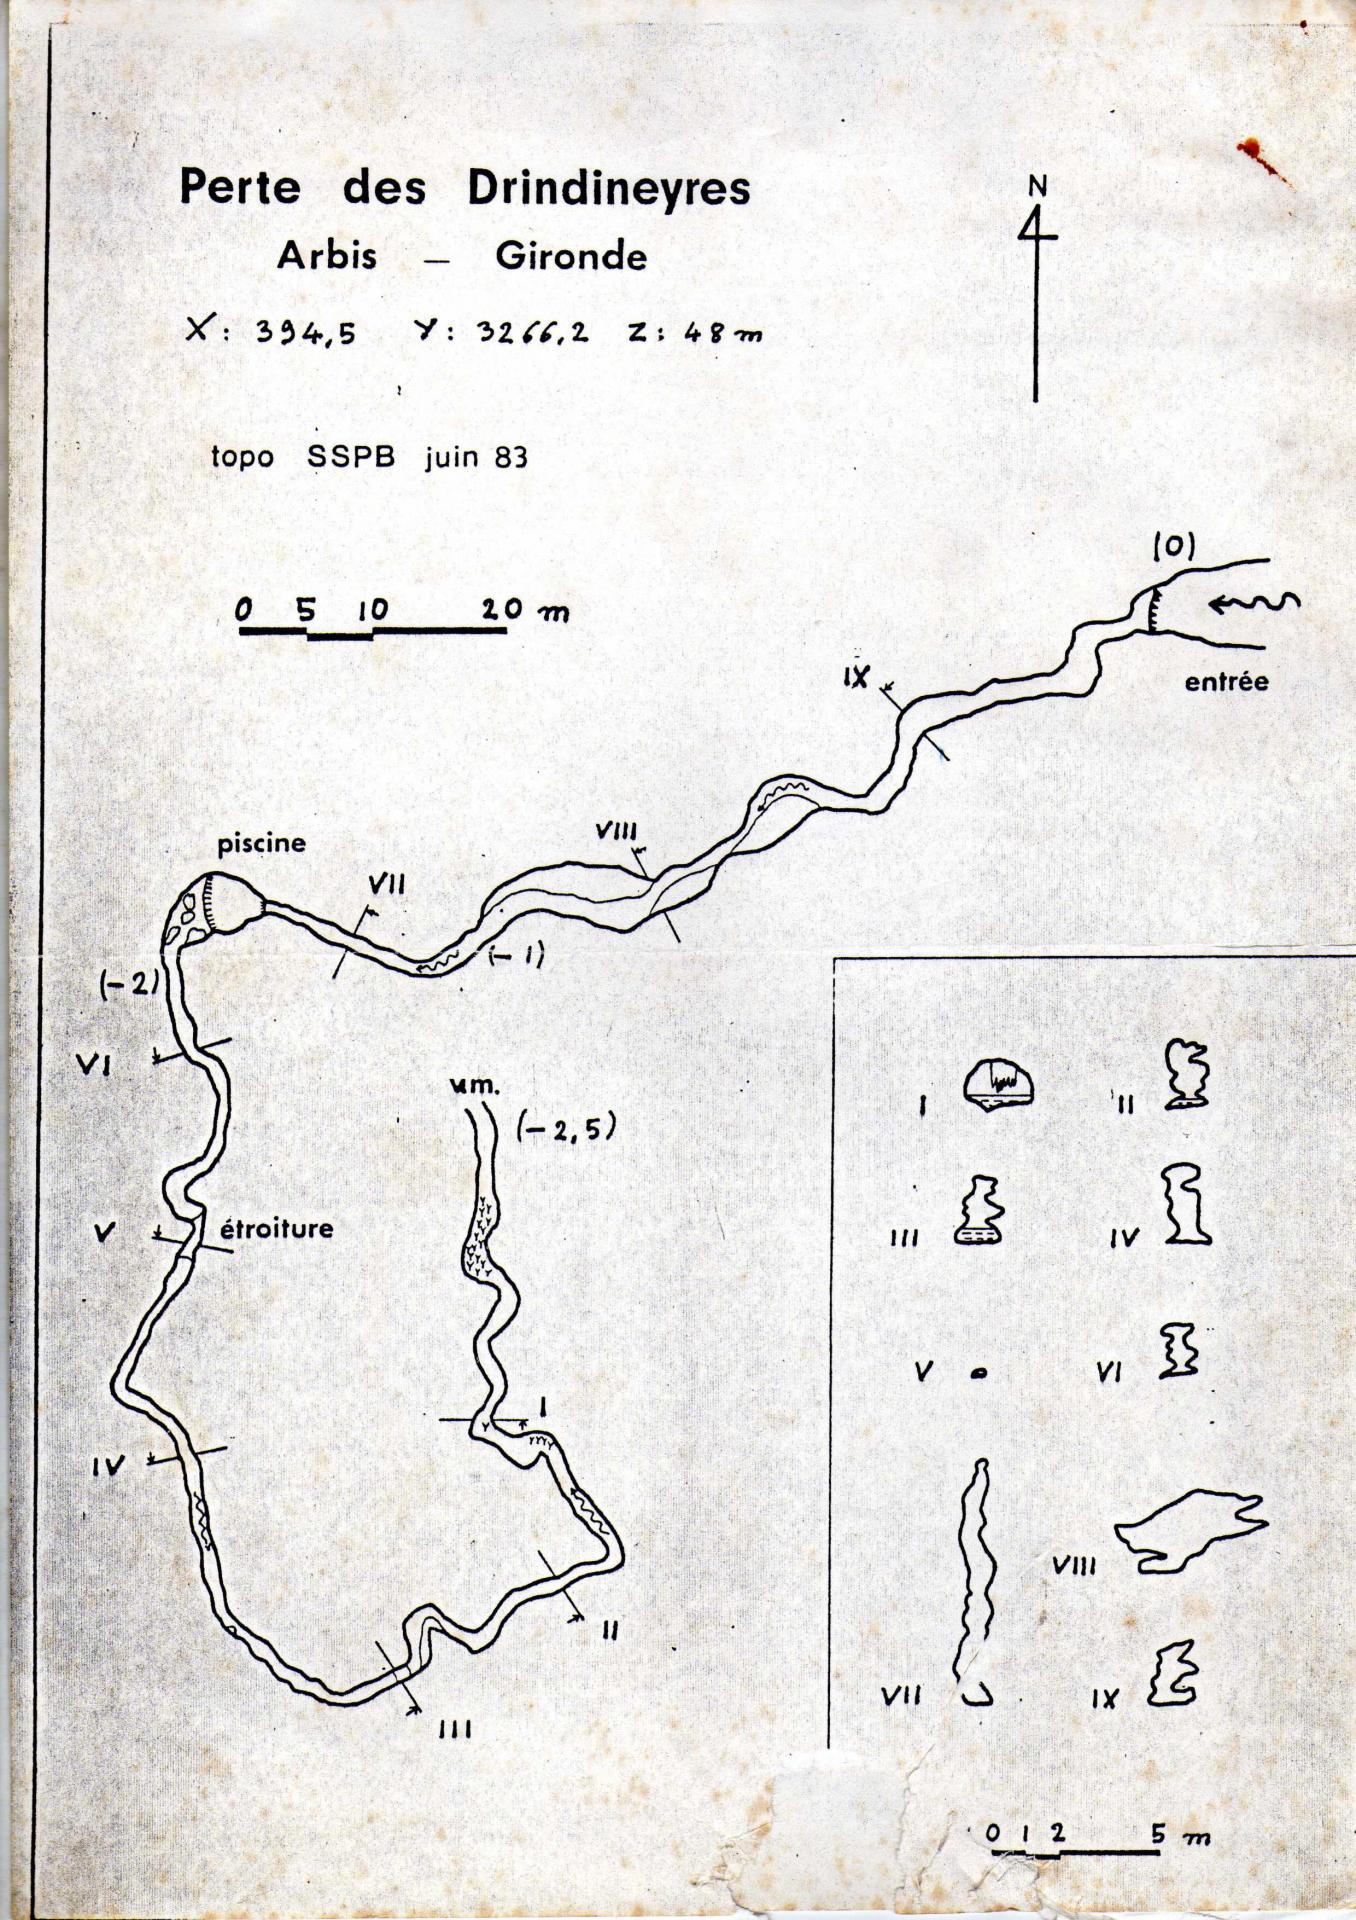 Topographie de la grotte les drindineyres a arbis